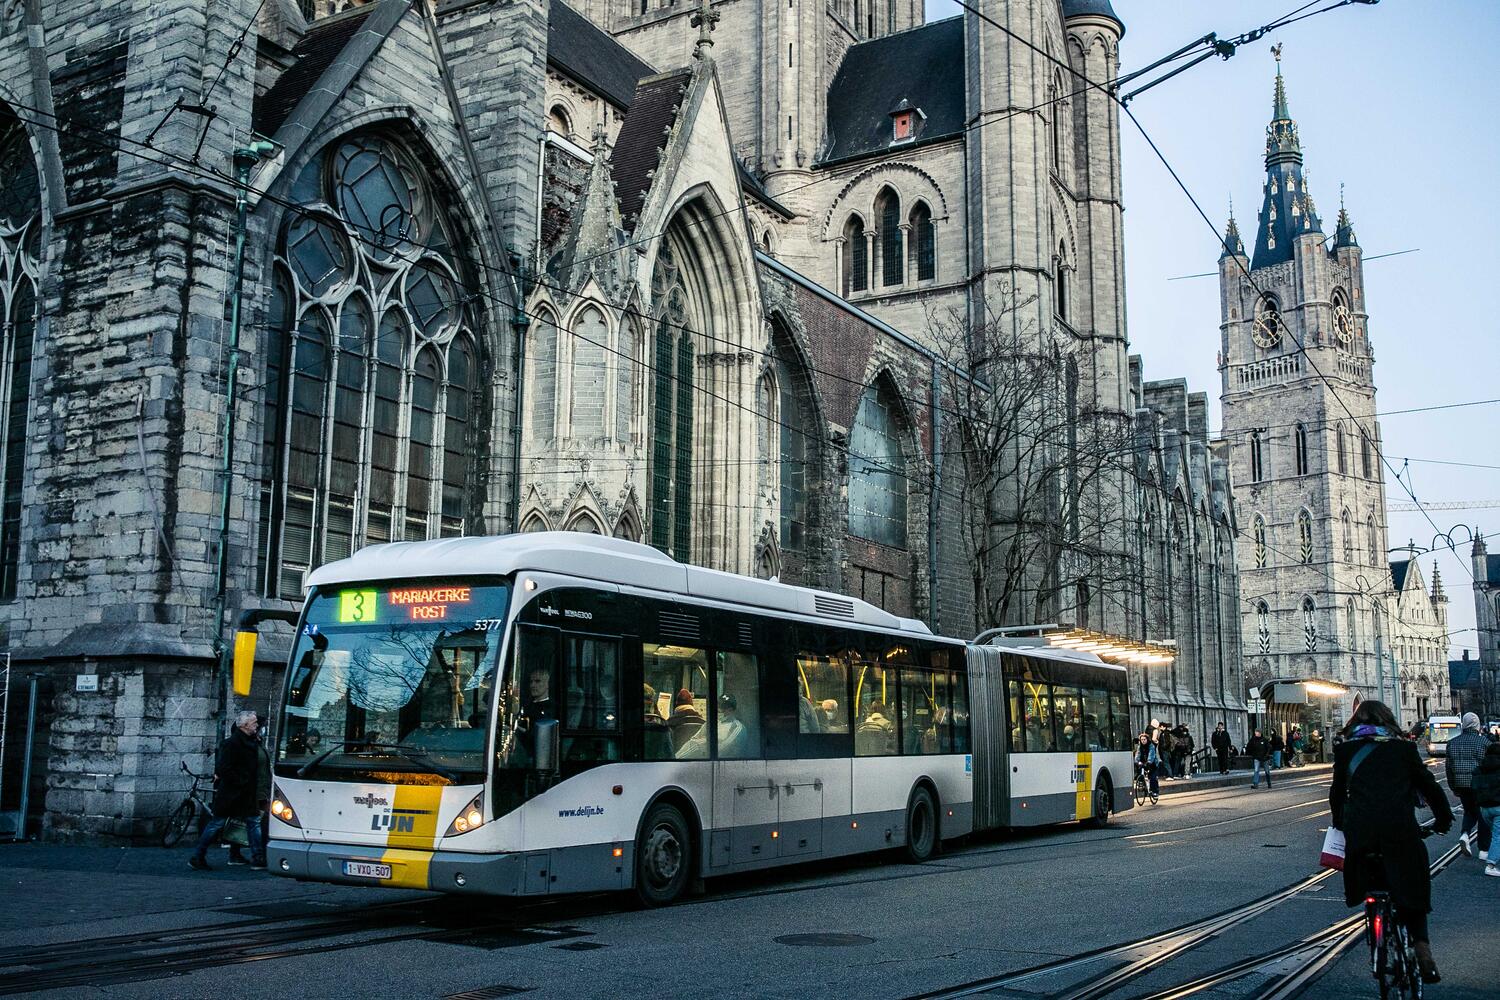 Verward verhoging hebzuchtig Het openbaar vervoer in Gent | Visit Gent